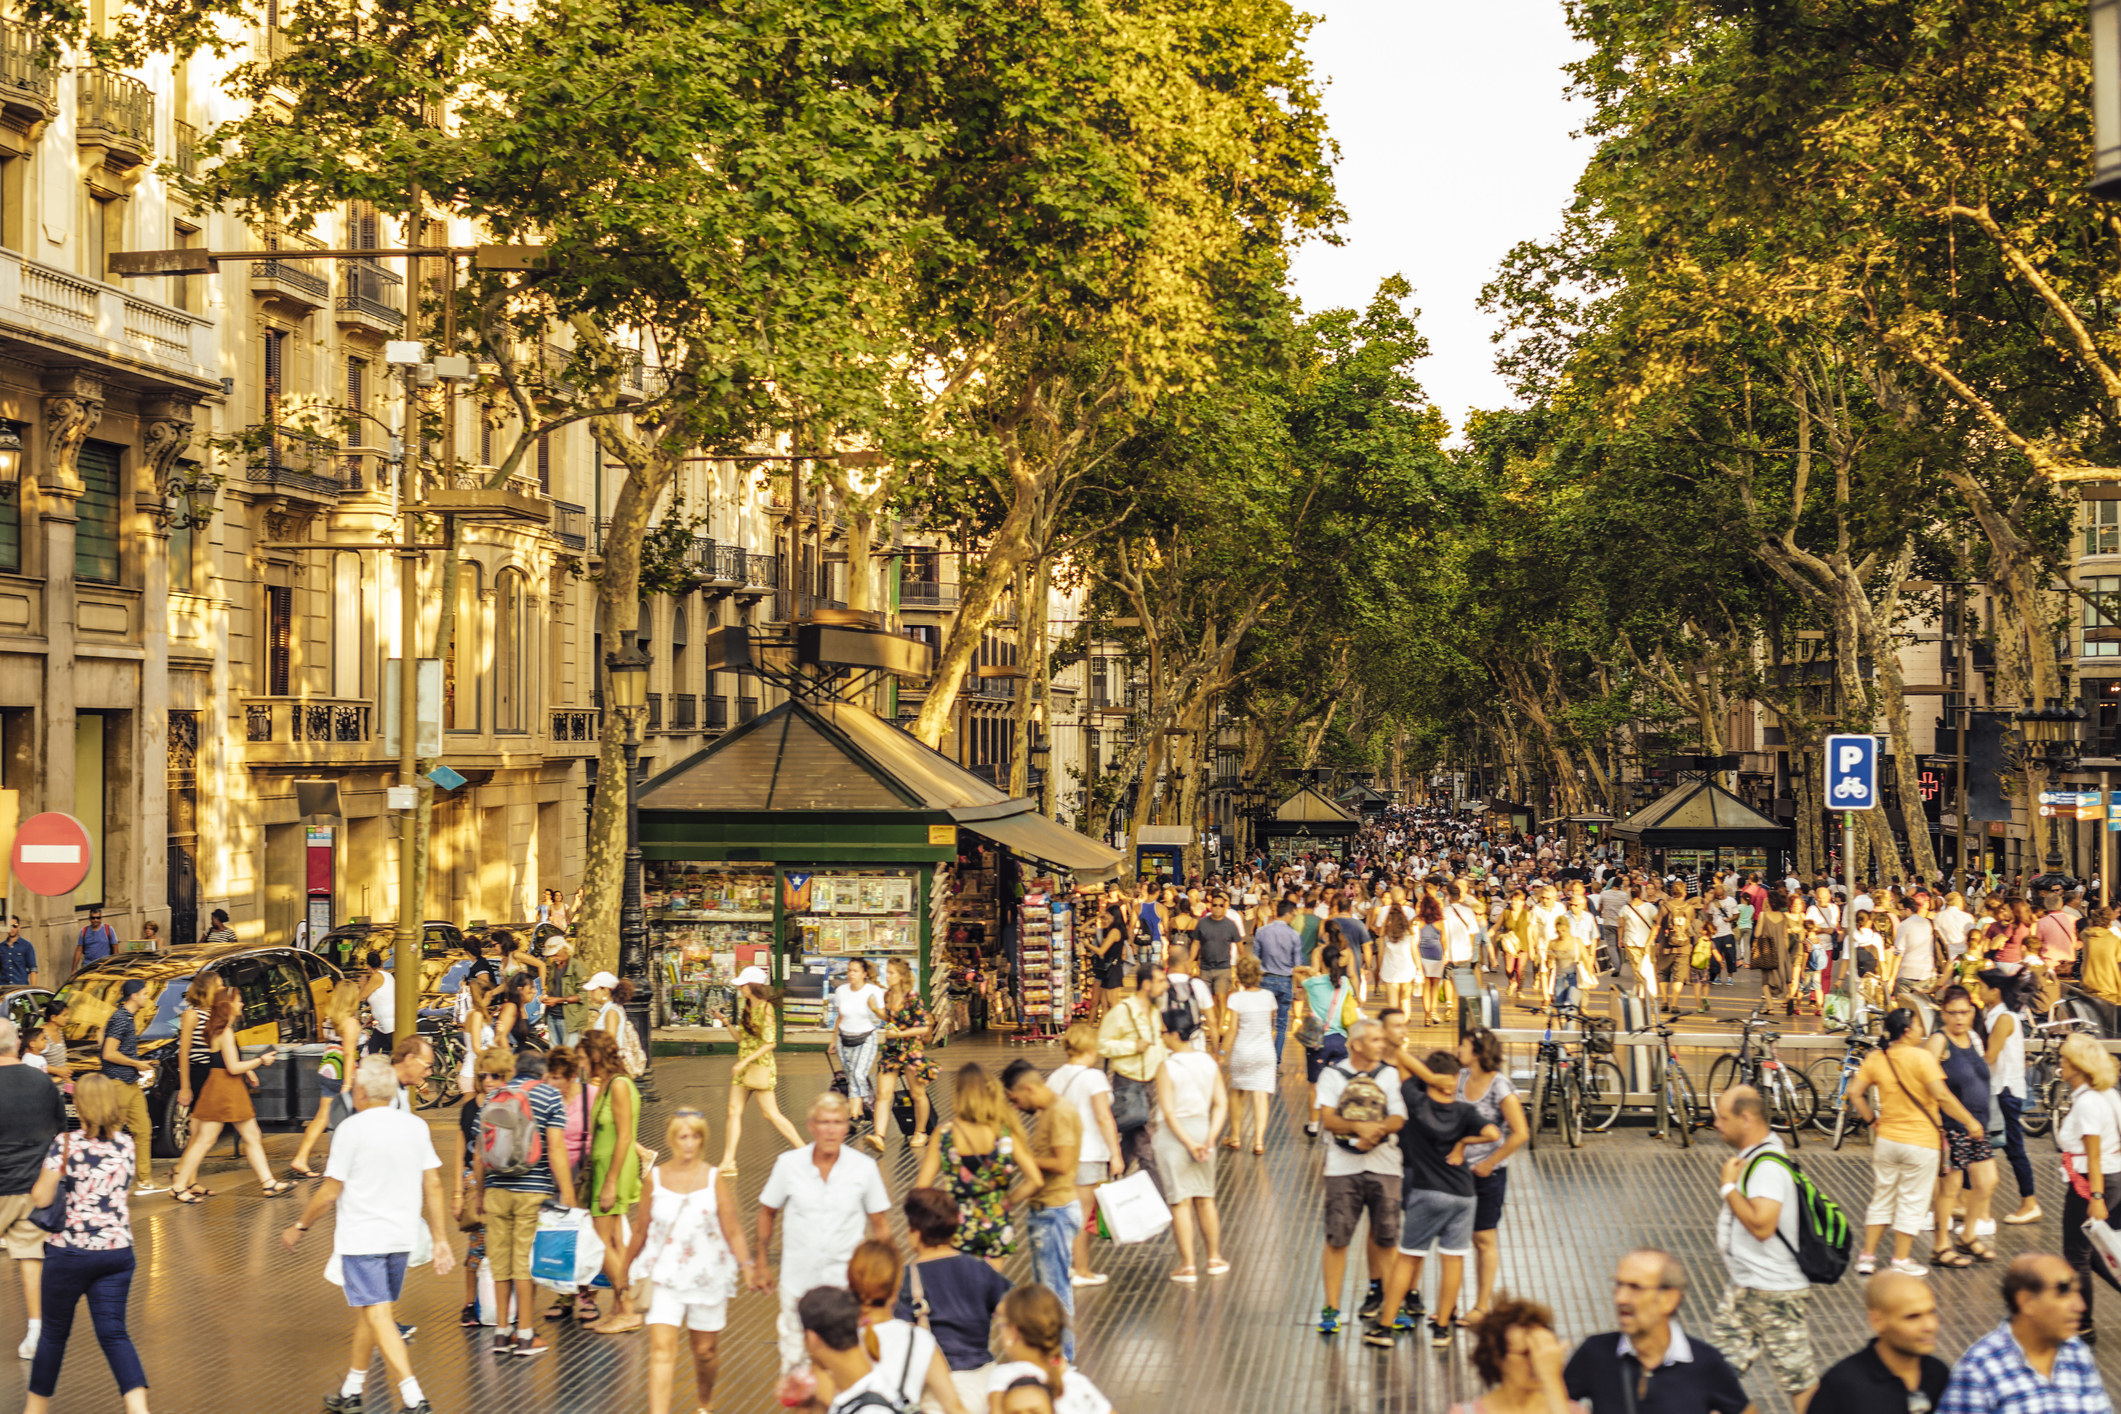 Busy crowd of people walking on La Rambla in Barcelona.